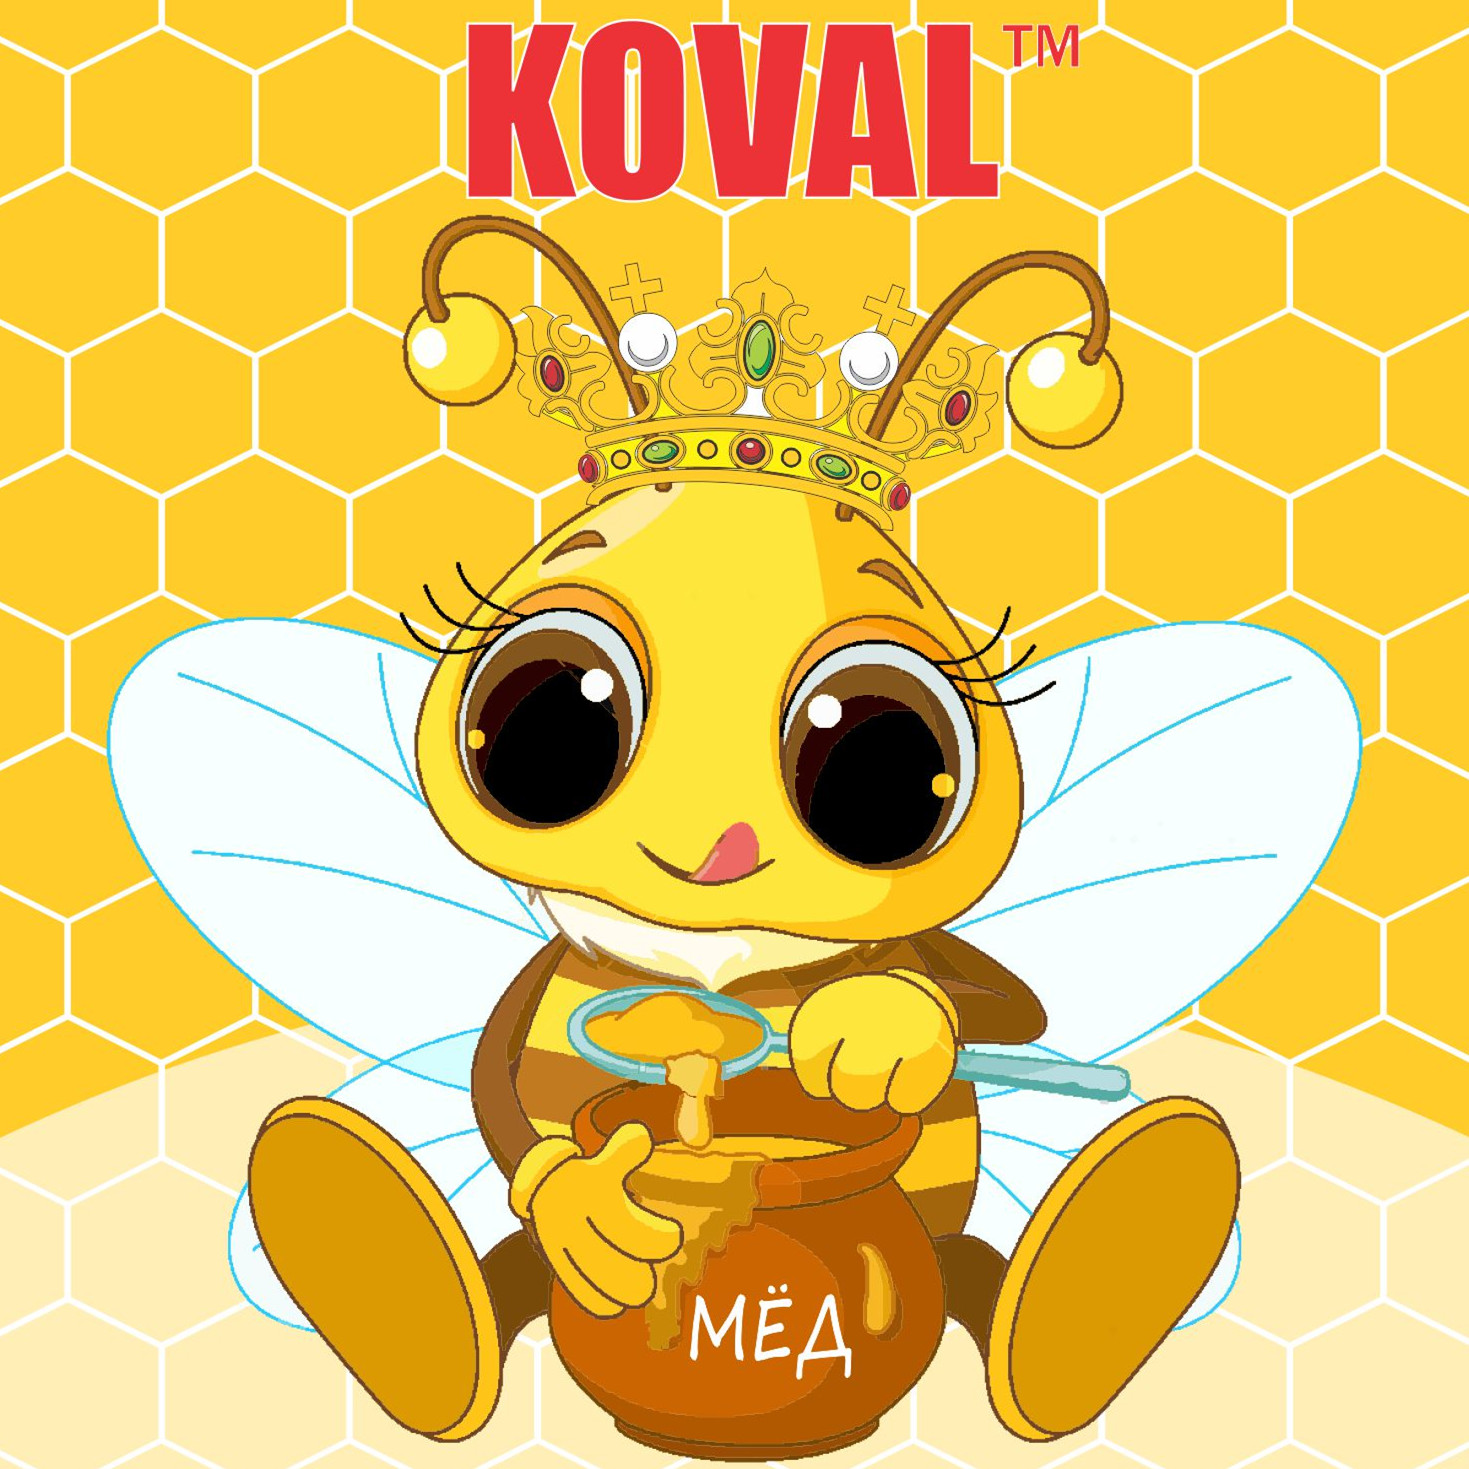 俄罗斯科瓦尔蜂蜜2015